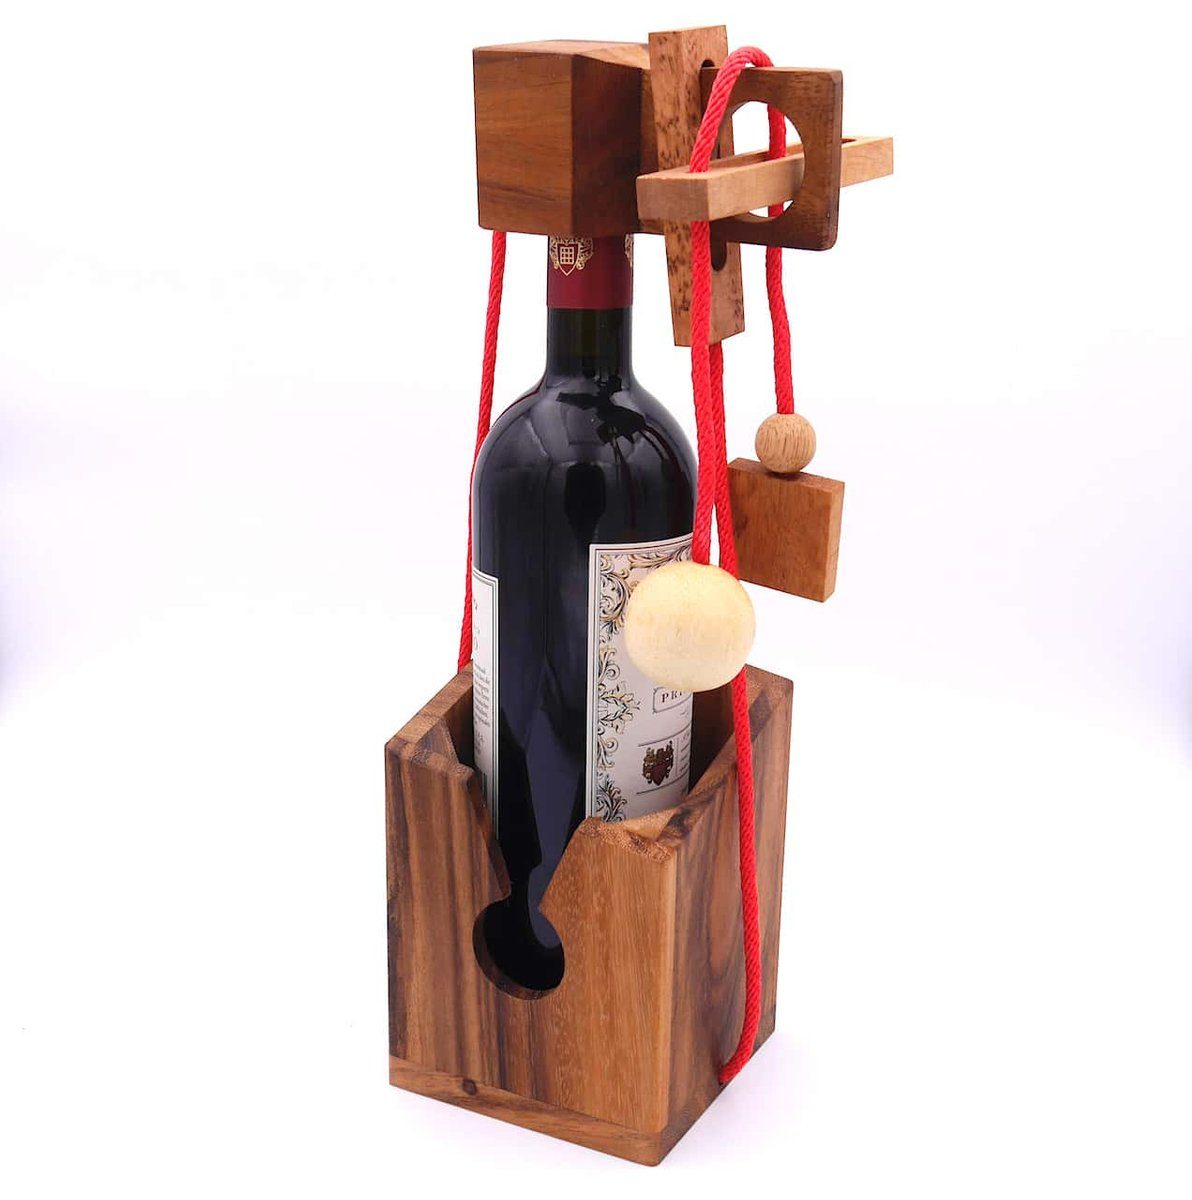 ROMBOL Denkspiele Spiel, Geschenkverpackung Flaschentresor – Edles Denkspiel aus Holz für große Flaschen, wiederverwendbar dunkles Holz, rotes Band